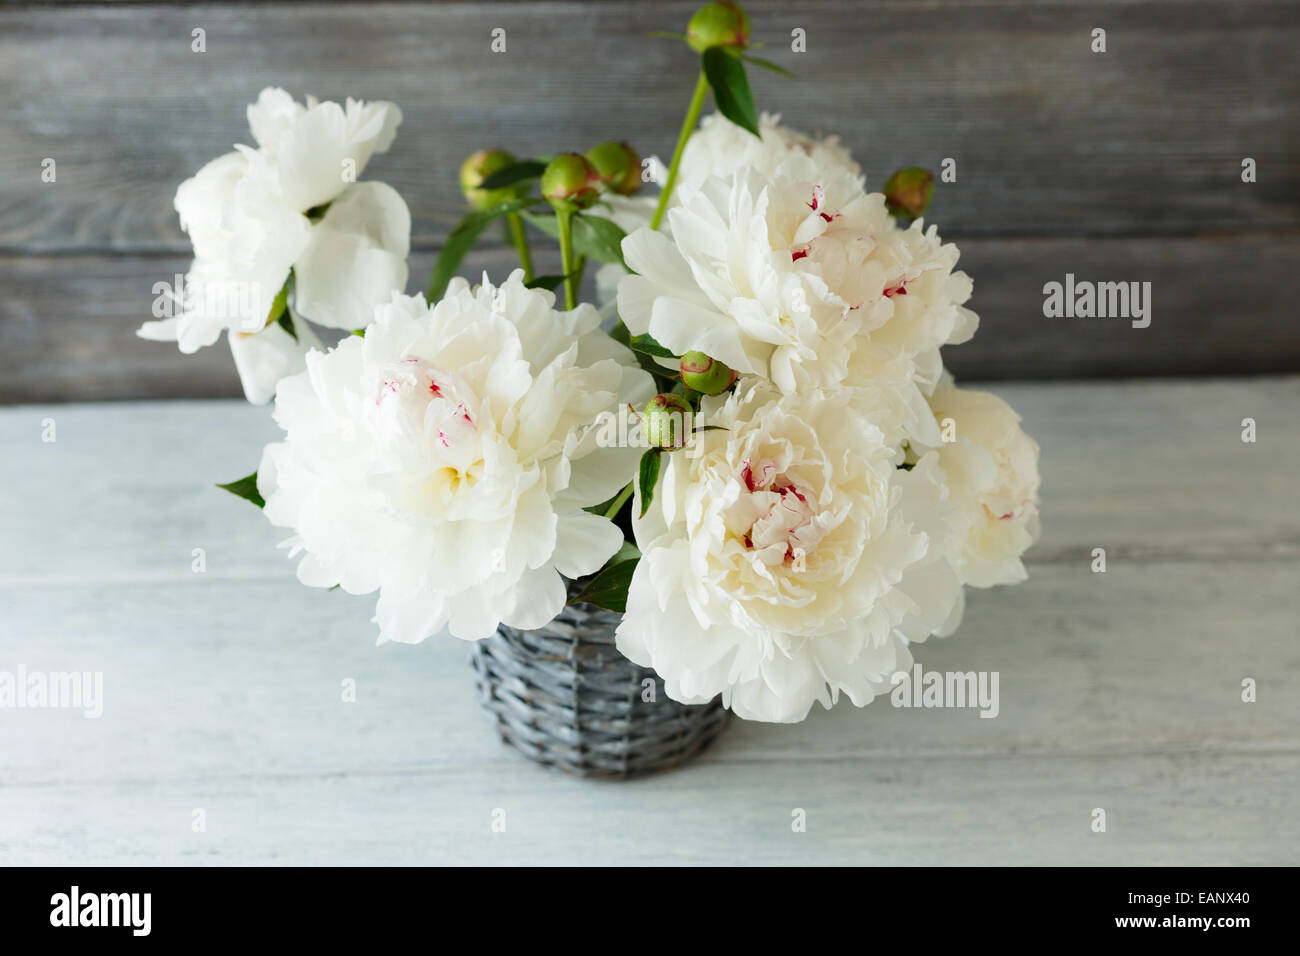 Pivoines blanches dans un vase aux conseils, fond de bois Banque D'Images